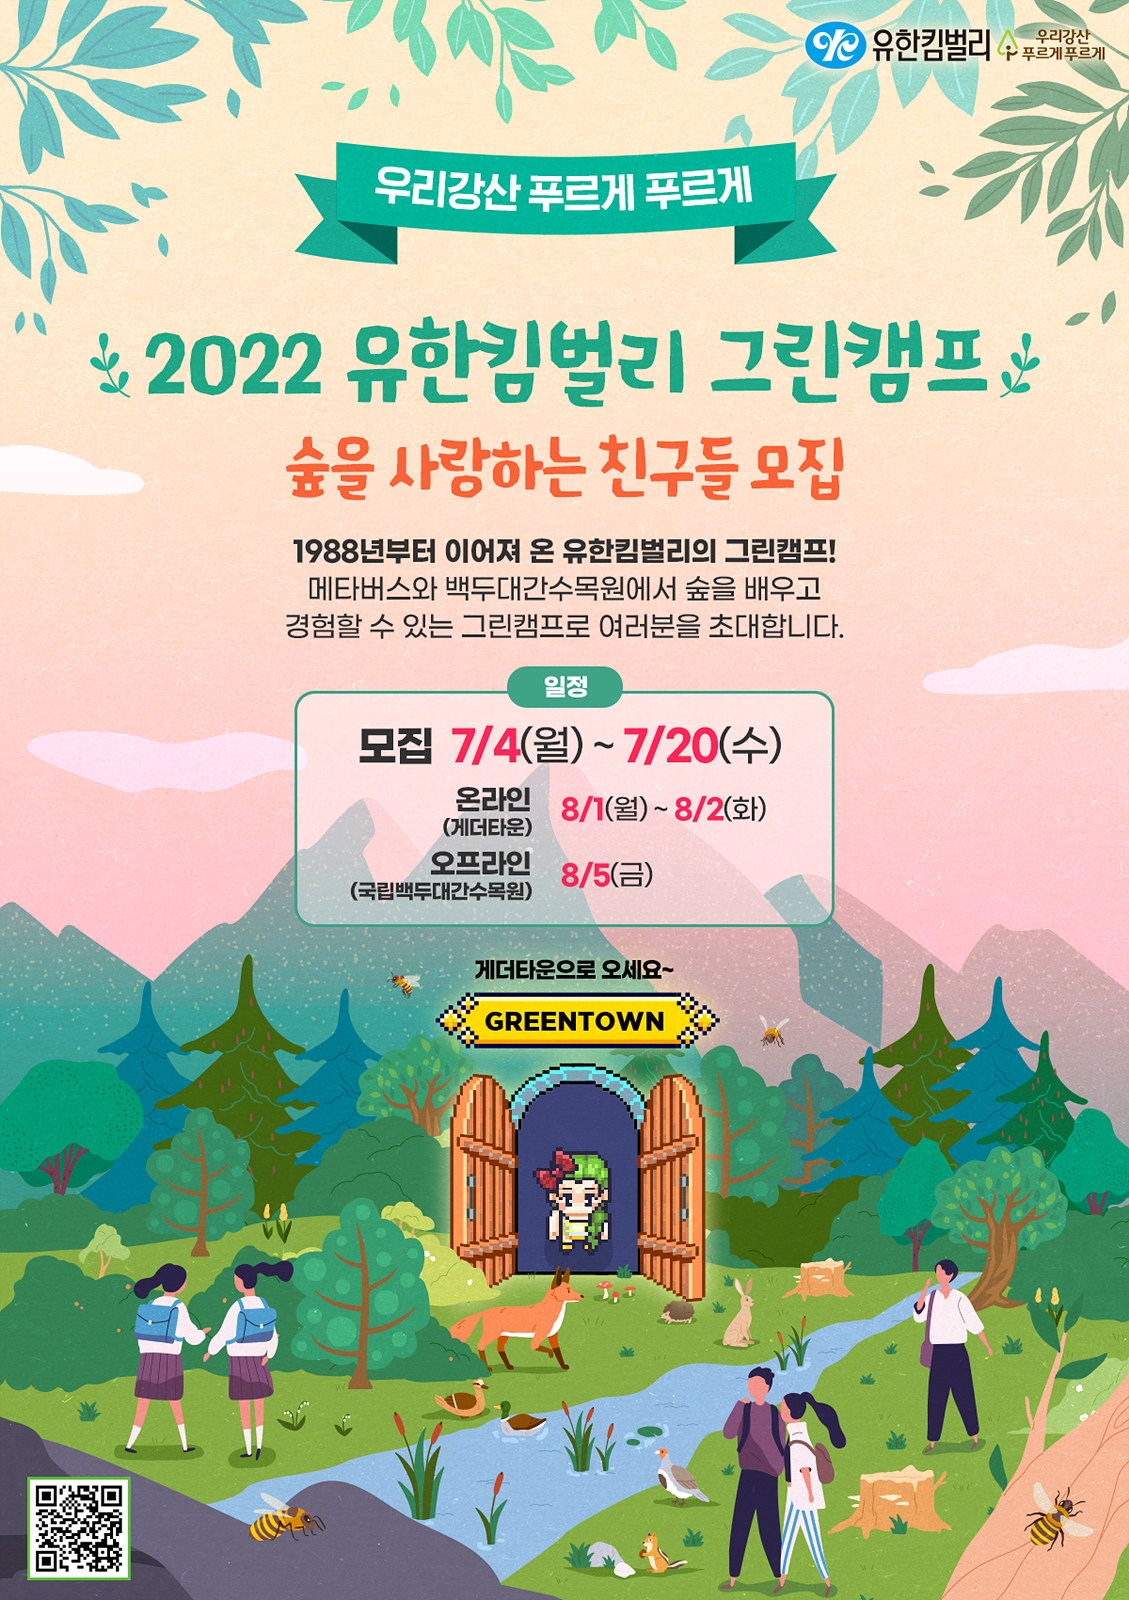 유한킴벌리 그린캠프, 메타버스/숲속 현장학습 참가자 모집